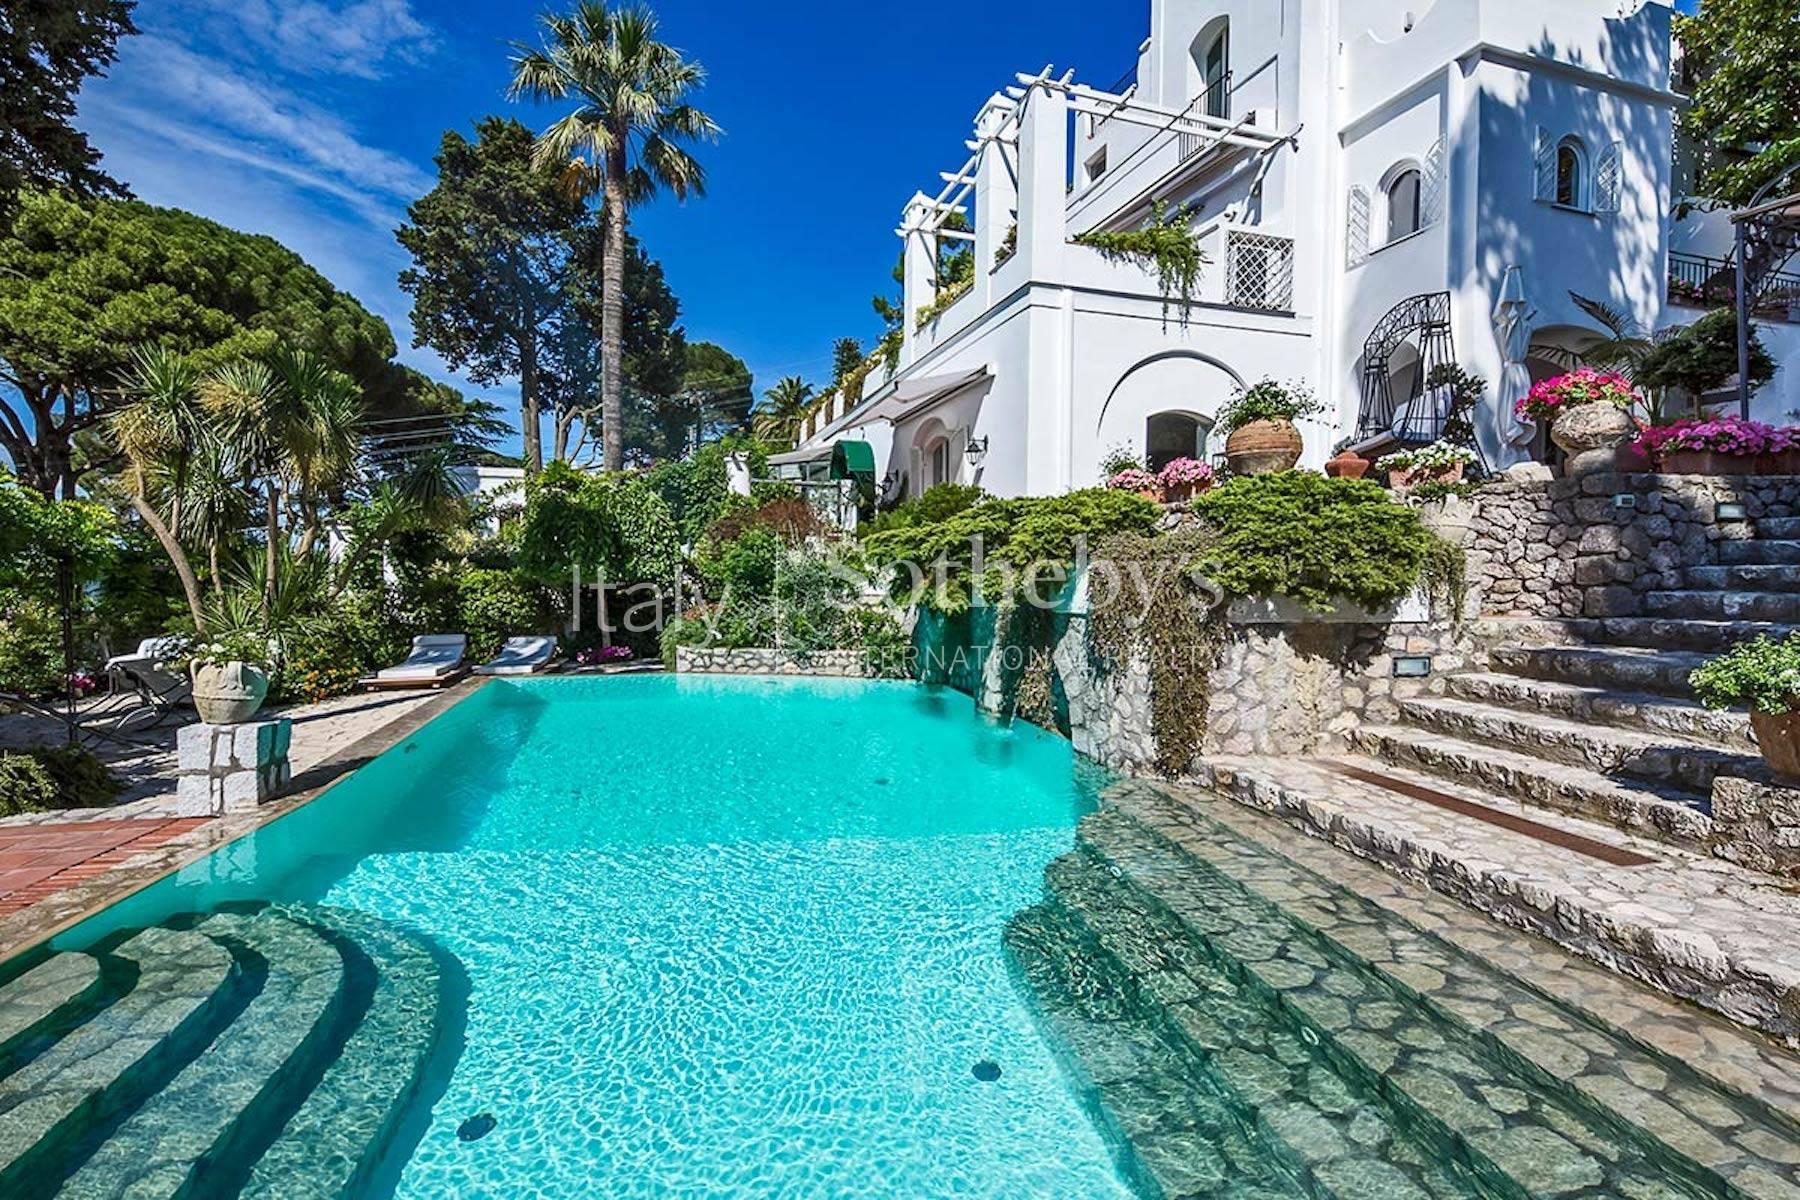 Splendida residenza di fine ottocento nell'incantevole Capri - 2